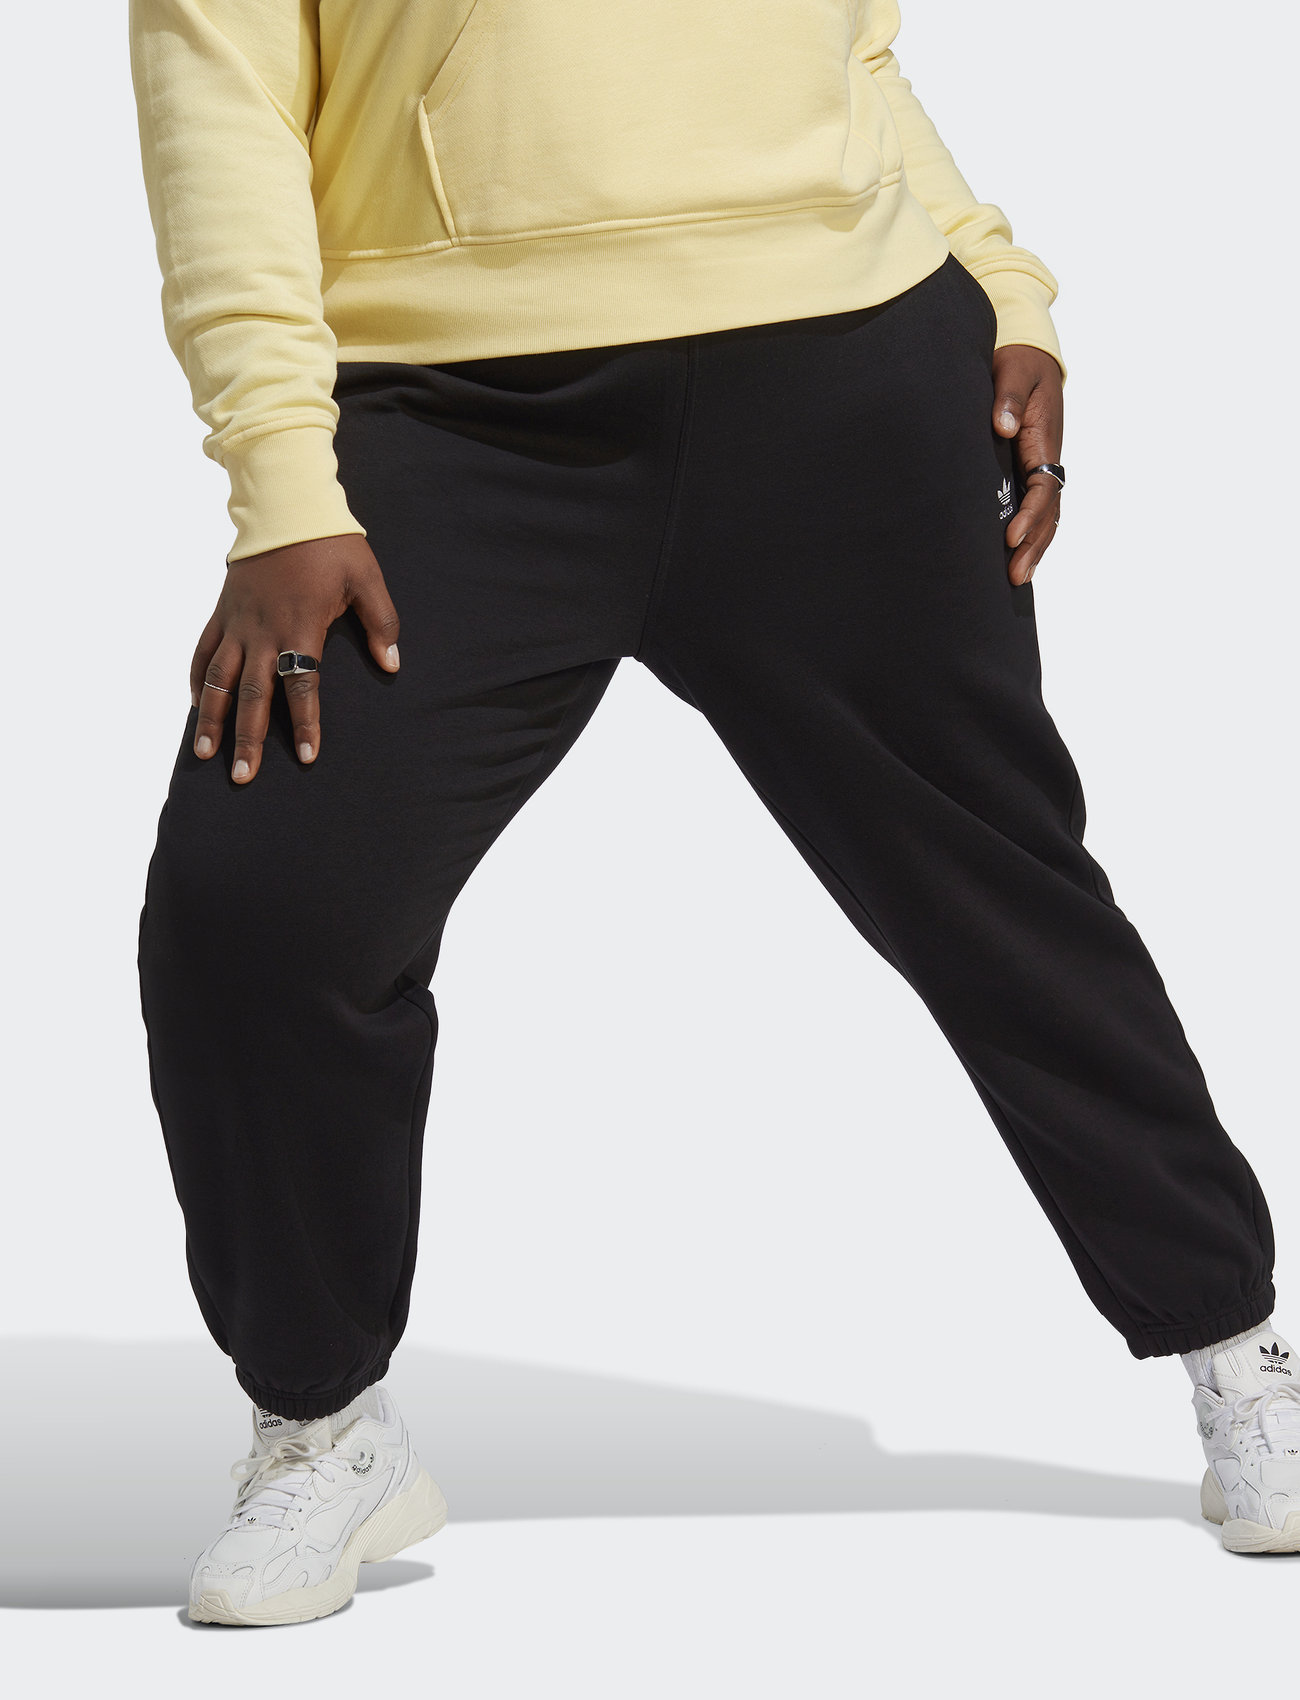 adidas Originals Pants - Sweatpants | Boozt.com